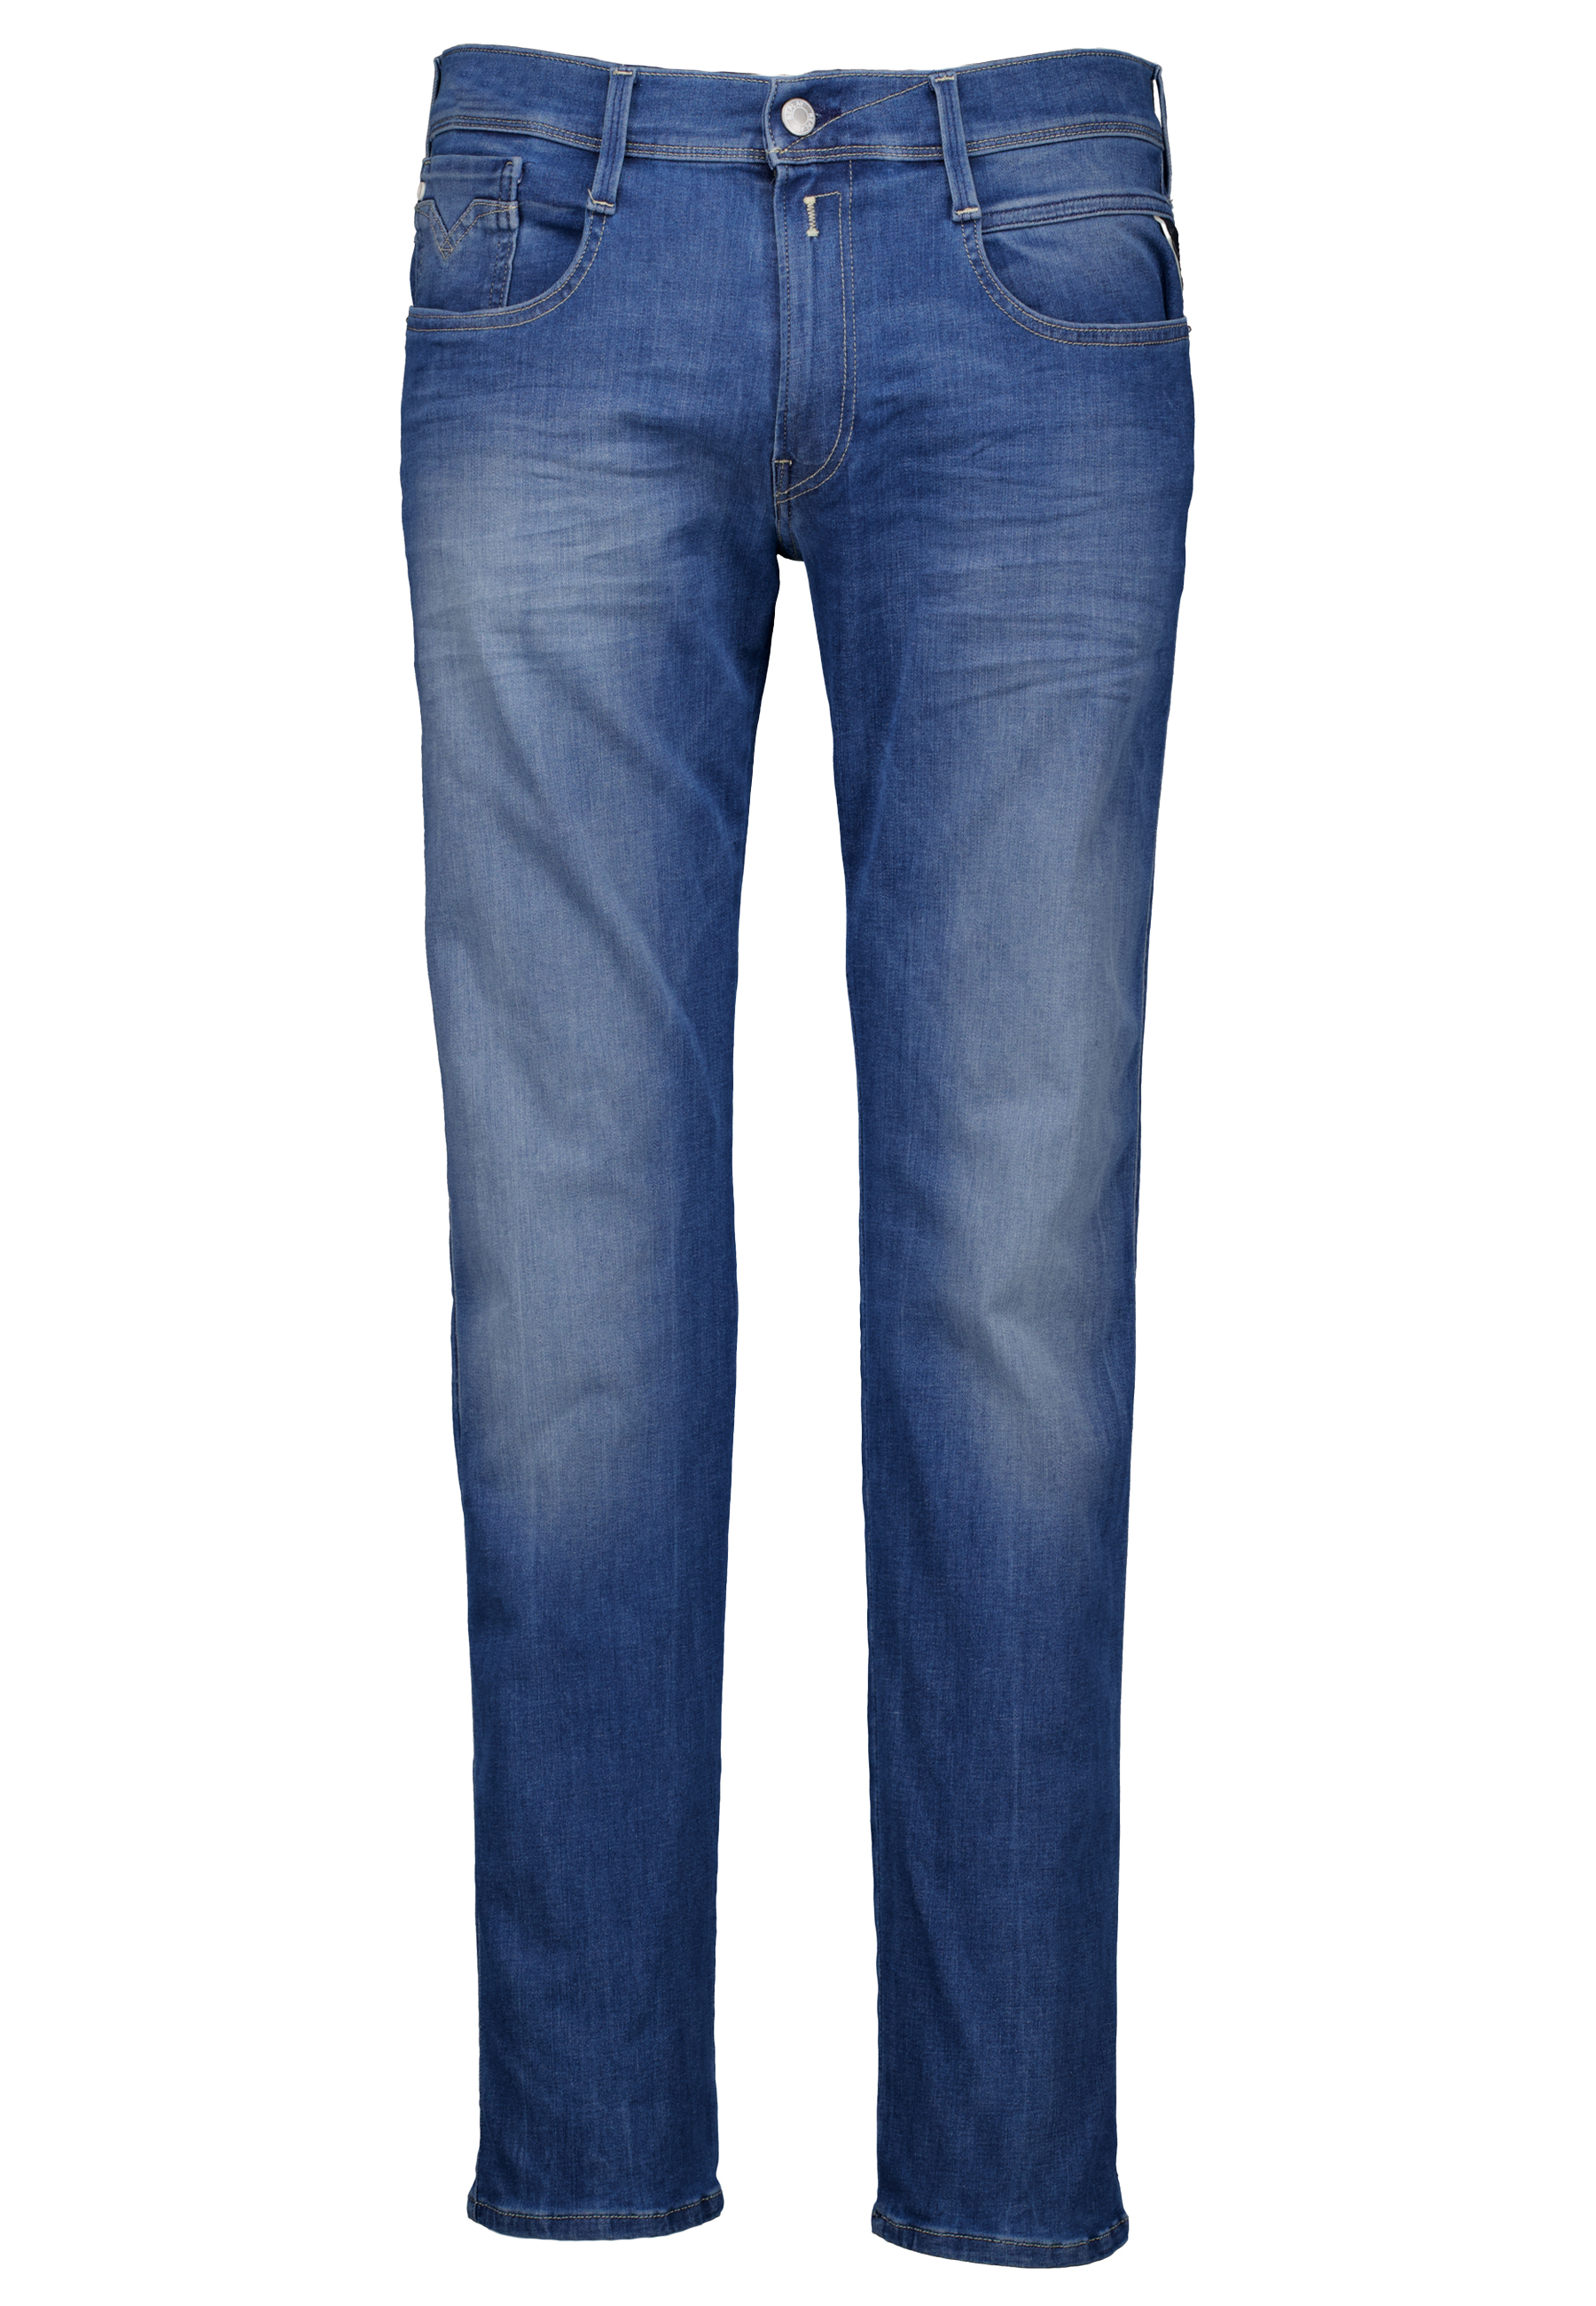 Replay Heren Jeans Blauw maat 36/34